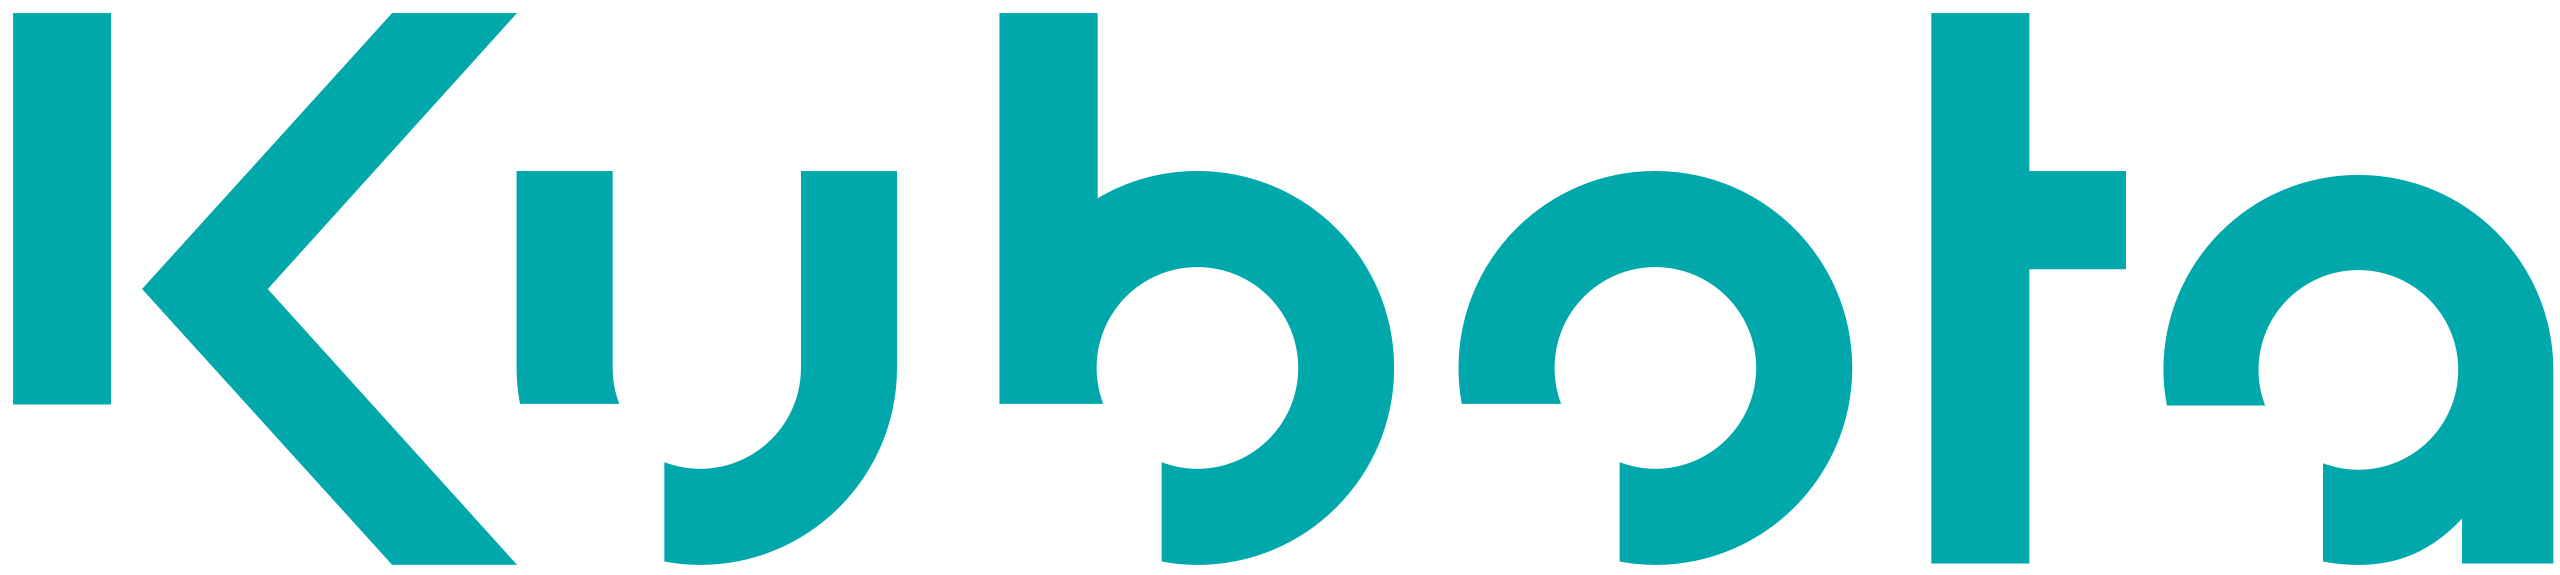 Kubota_Logo.svg